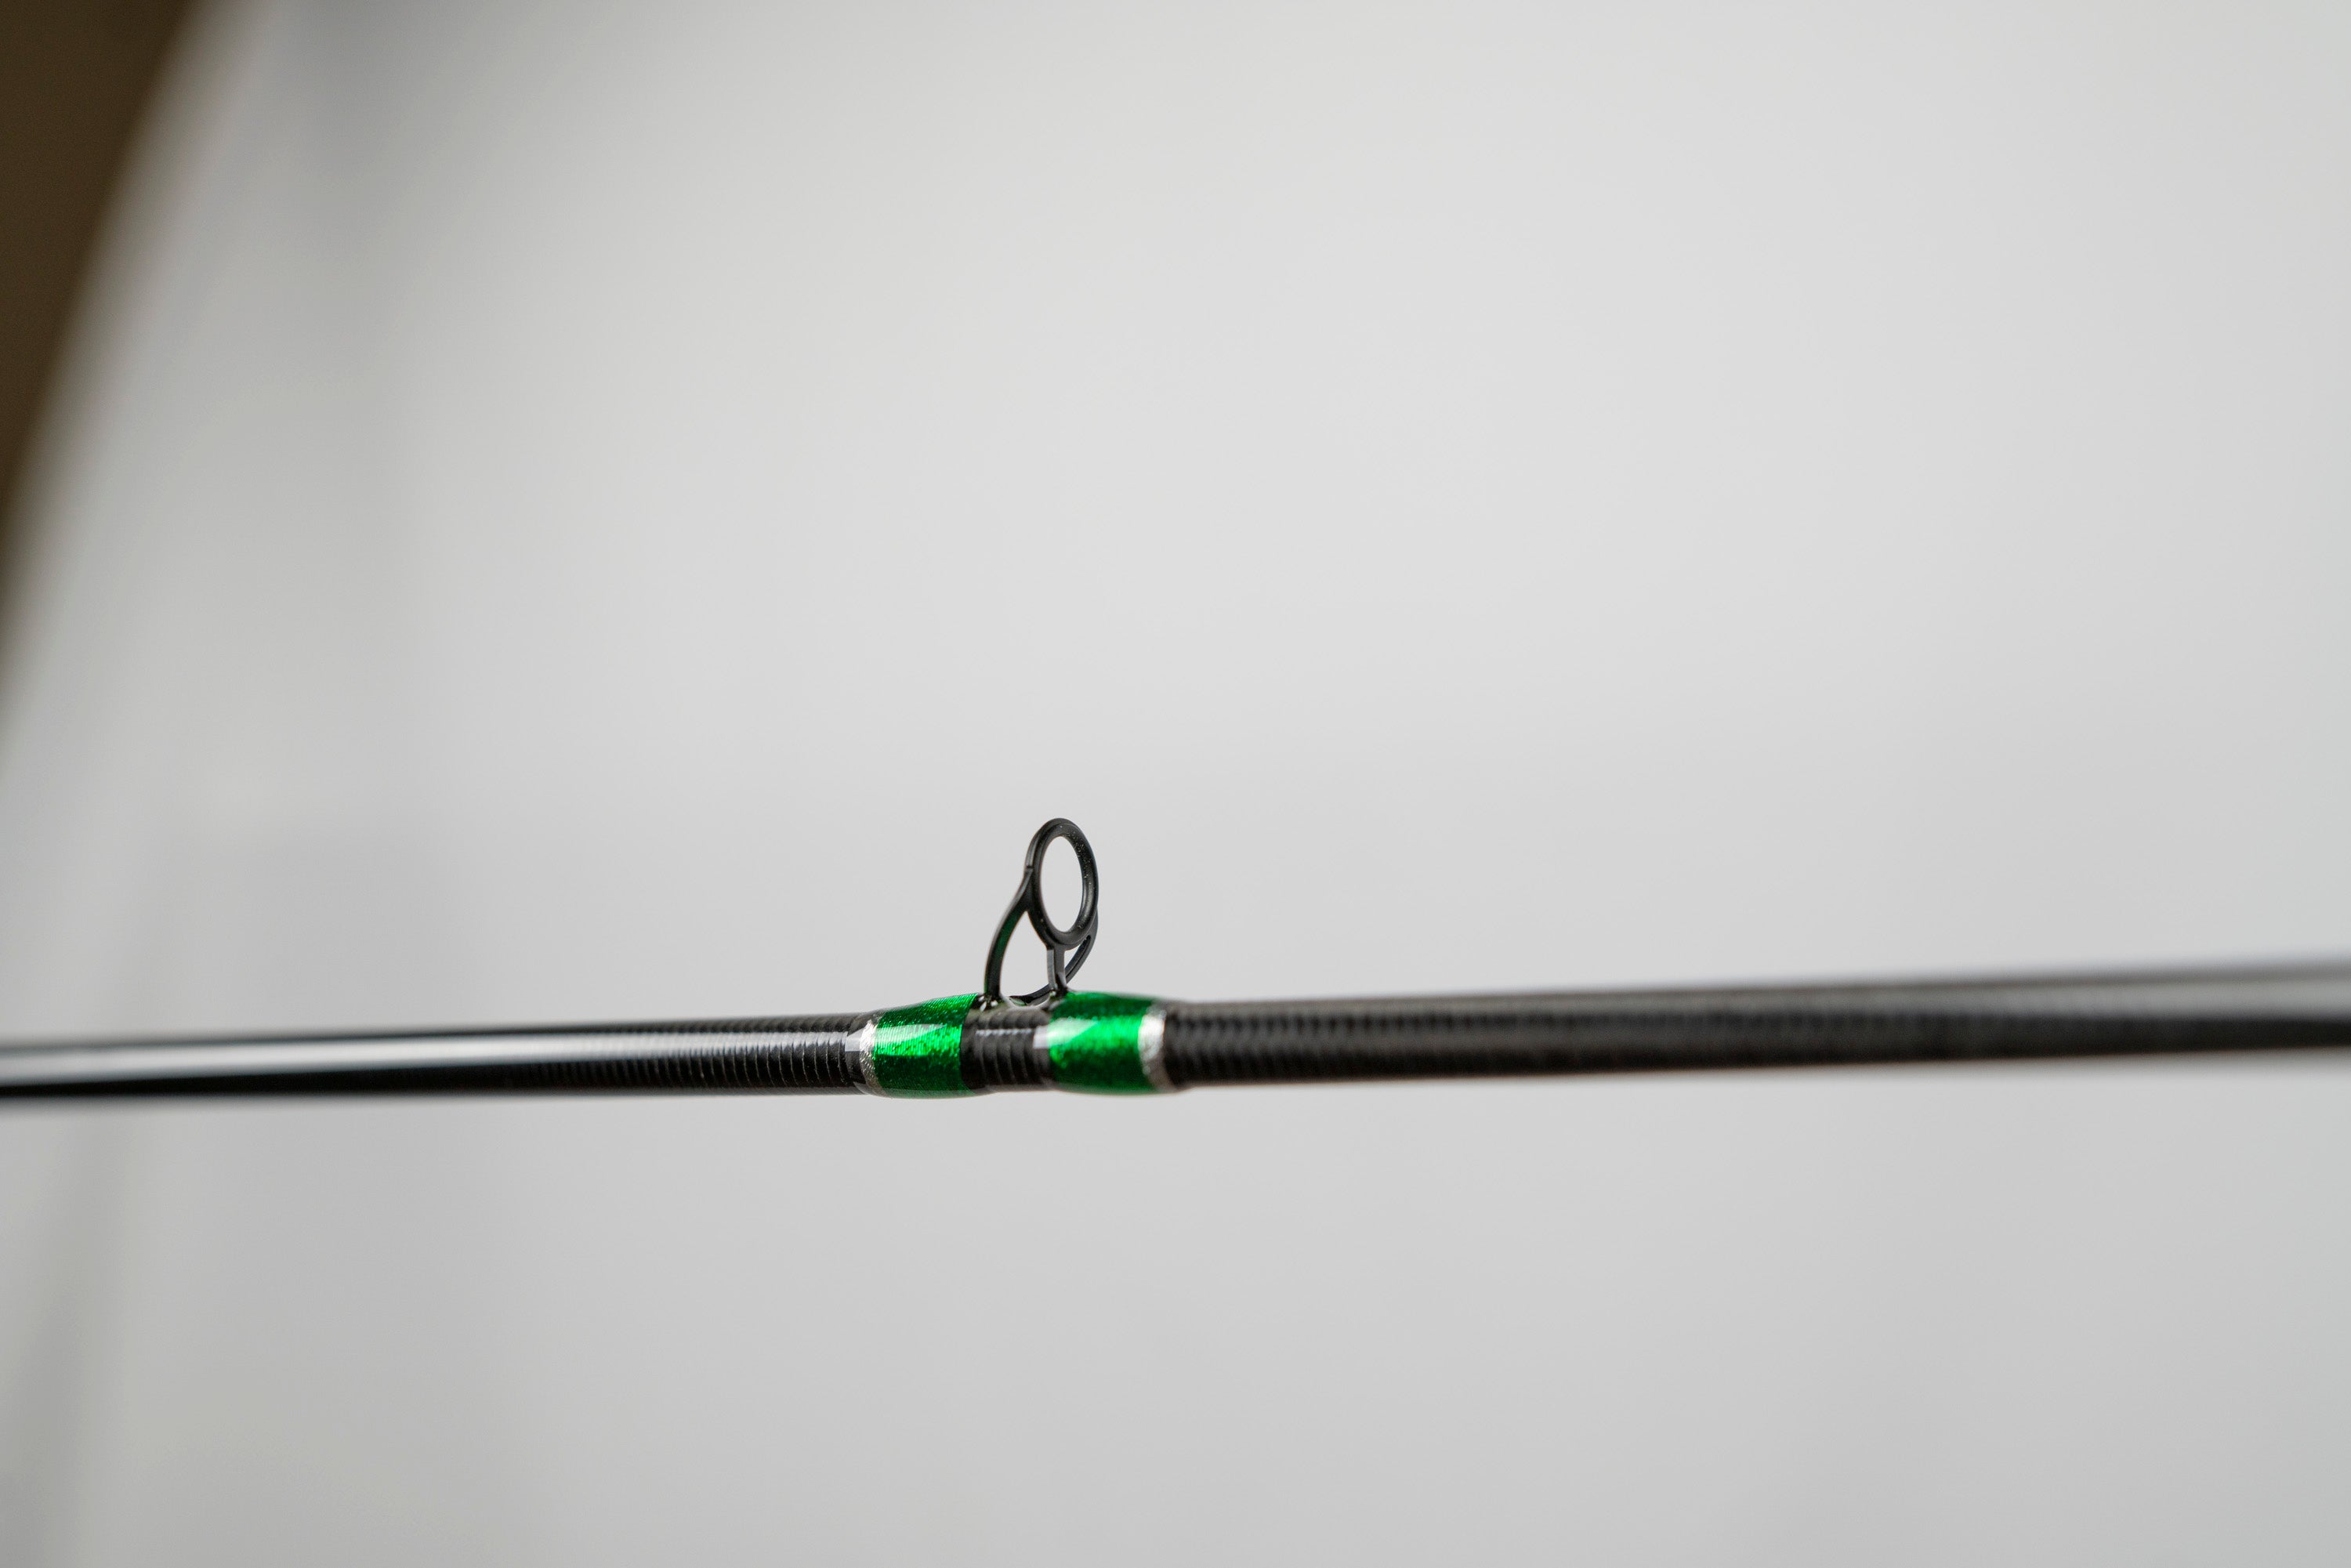 Grasshopper Fishing Rod – KISTLER Fishing